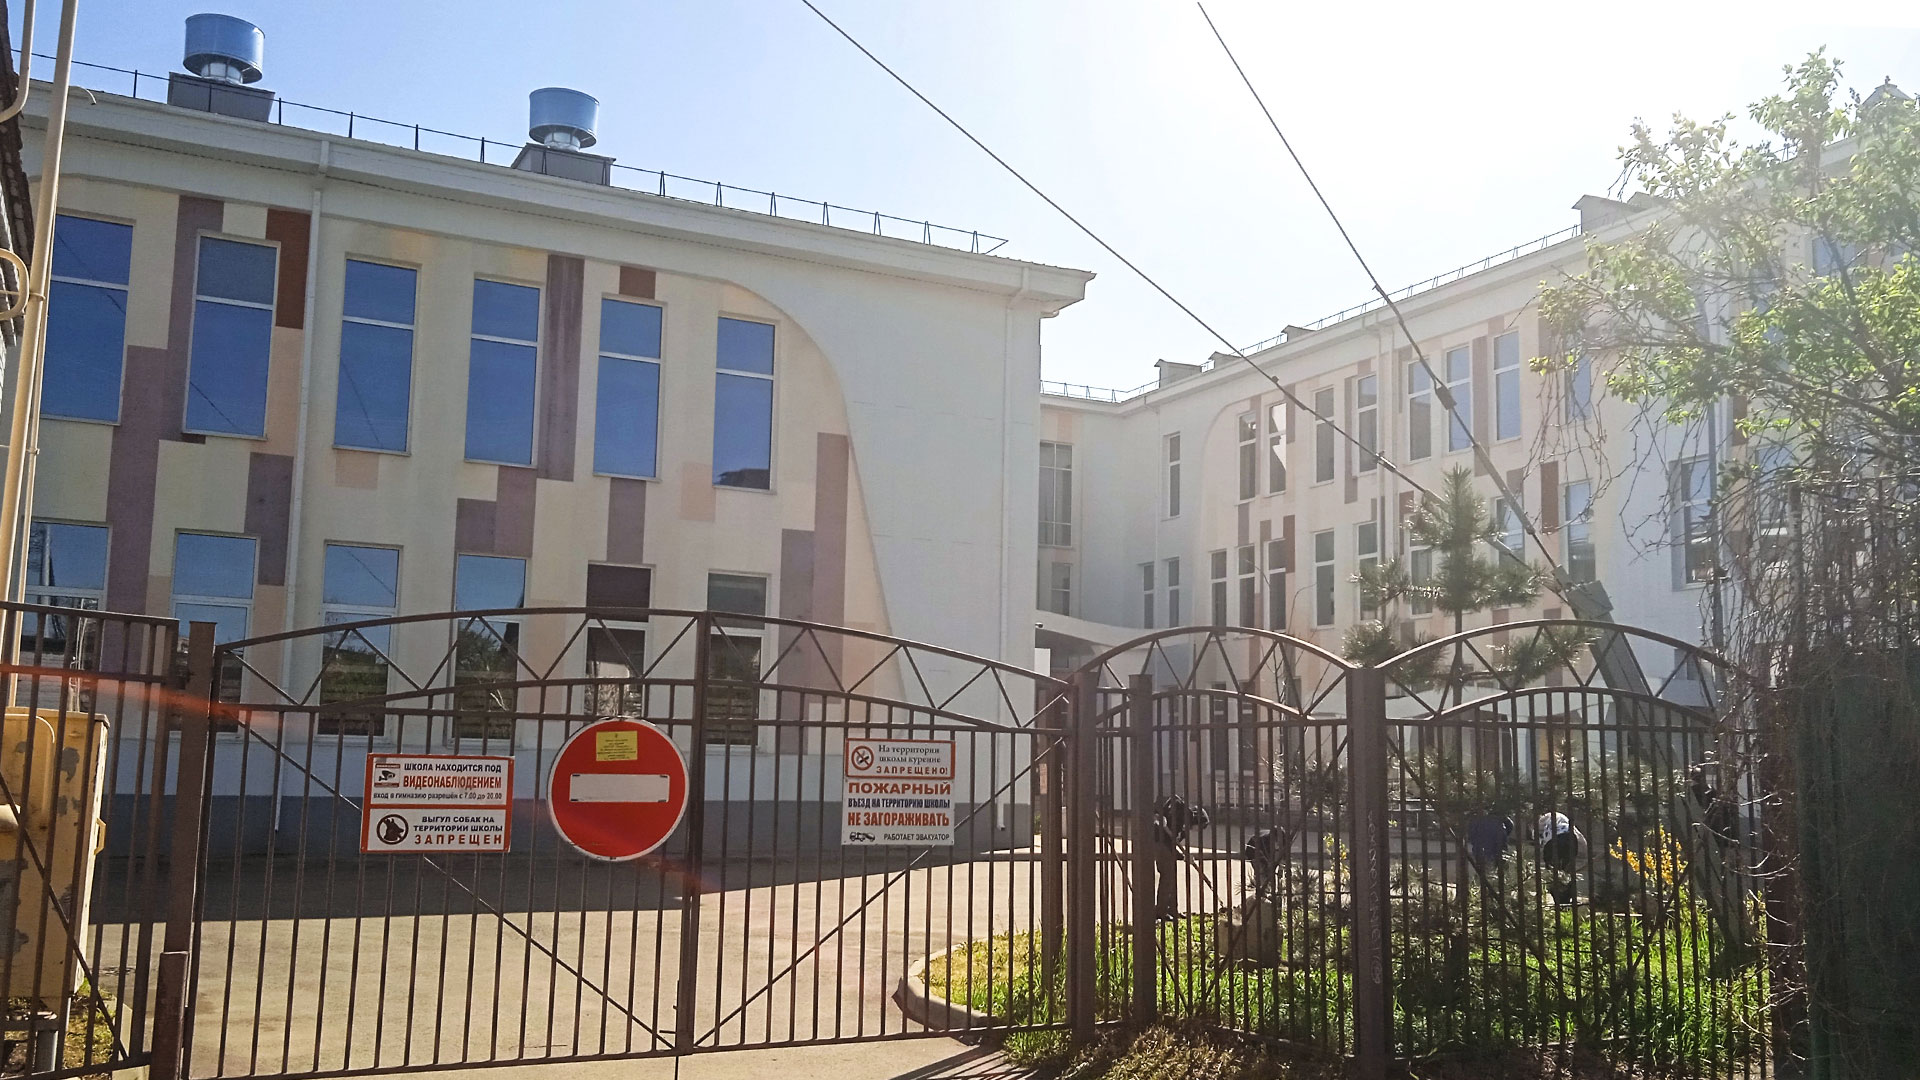 Пожарный въезд на территорию гимназии №23 г. Краснодар.